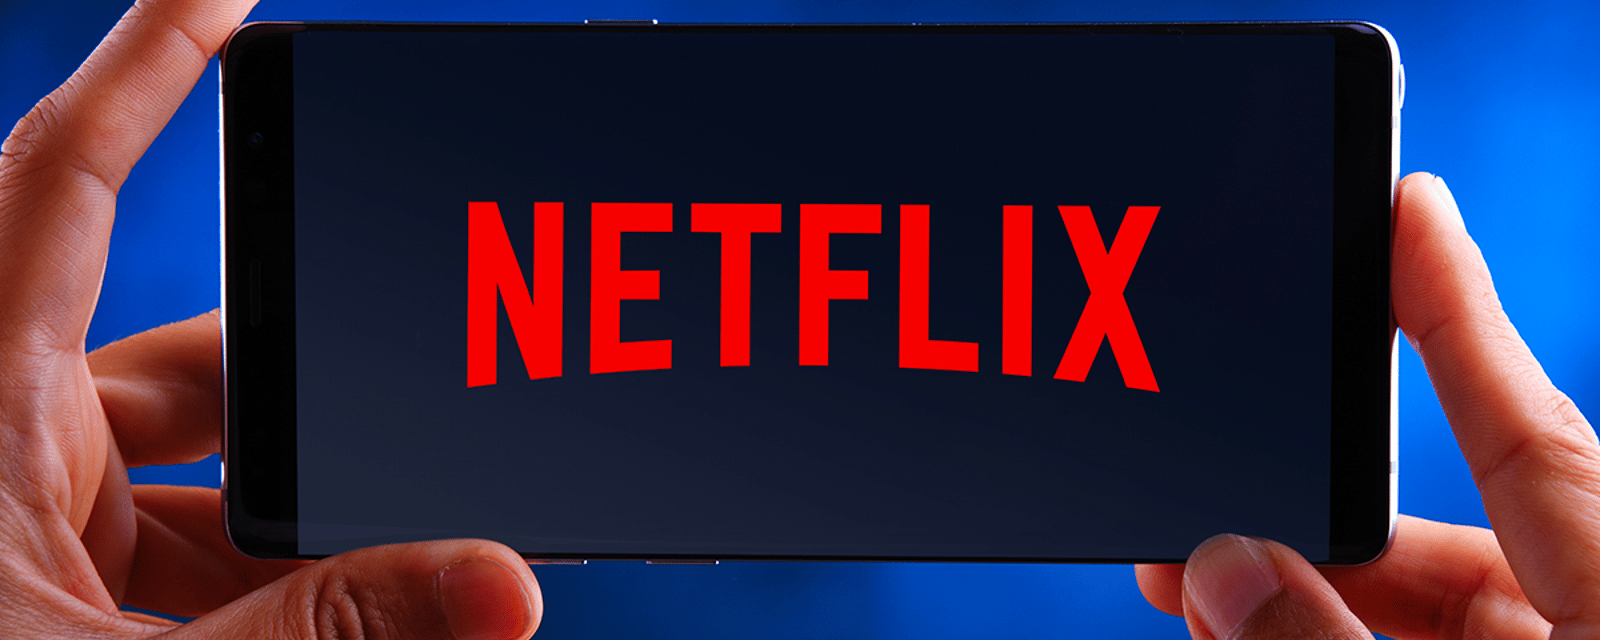 Des Québécois furieux contre la nouvelle politique de Netflix se désabonnent en masse